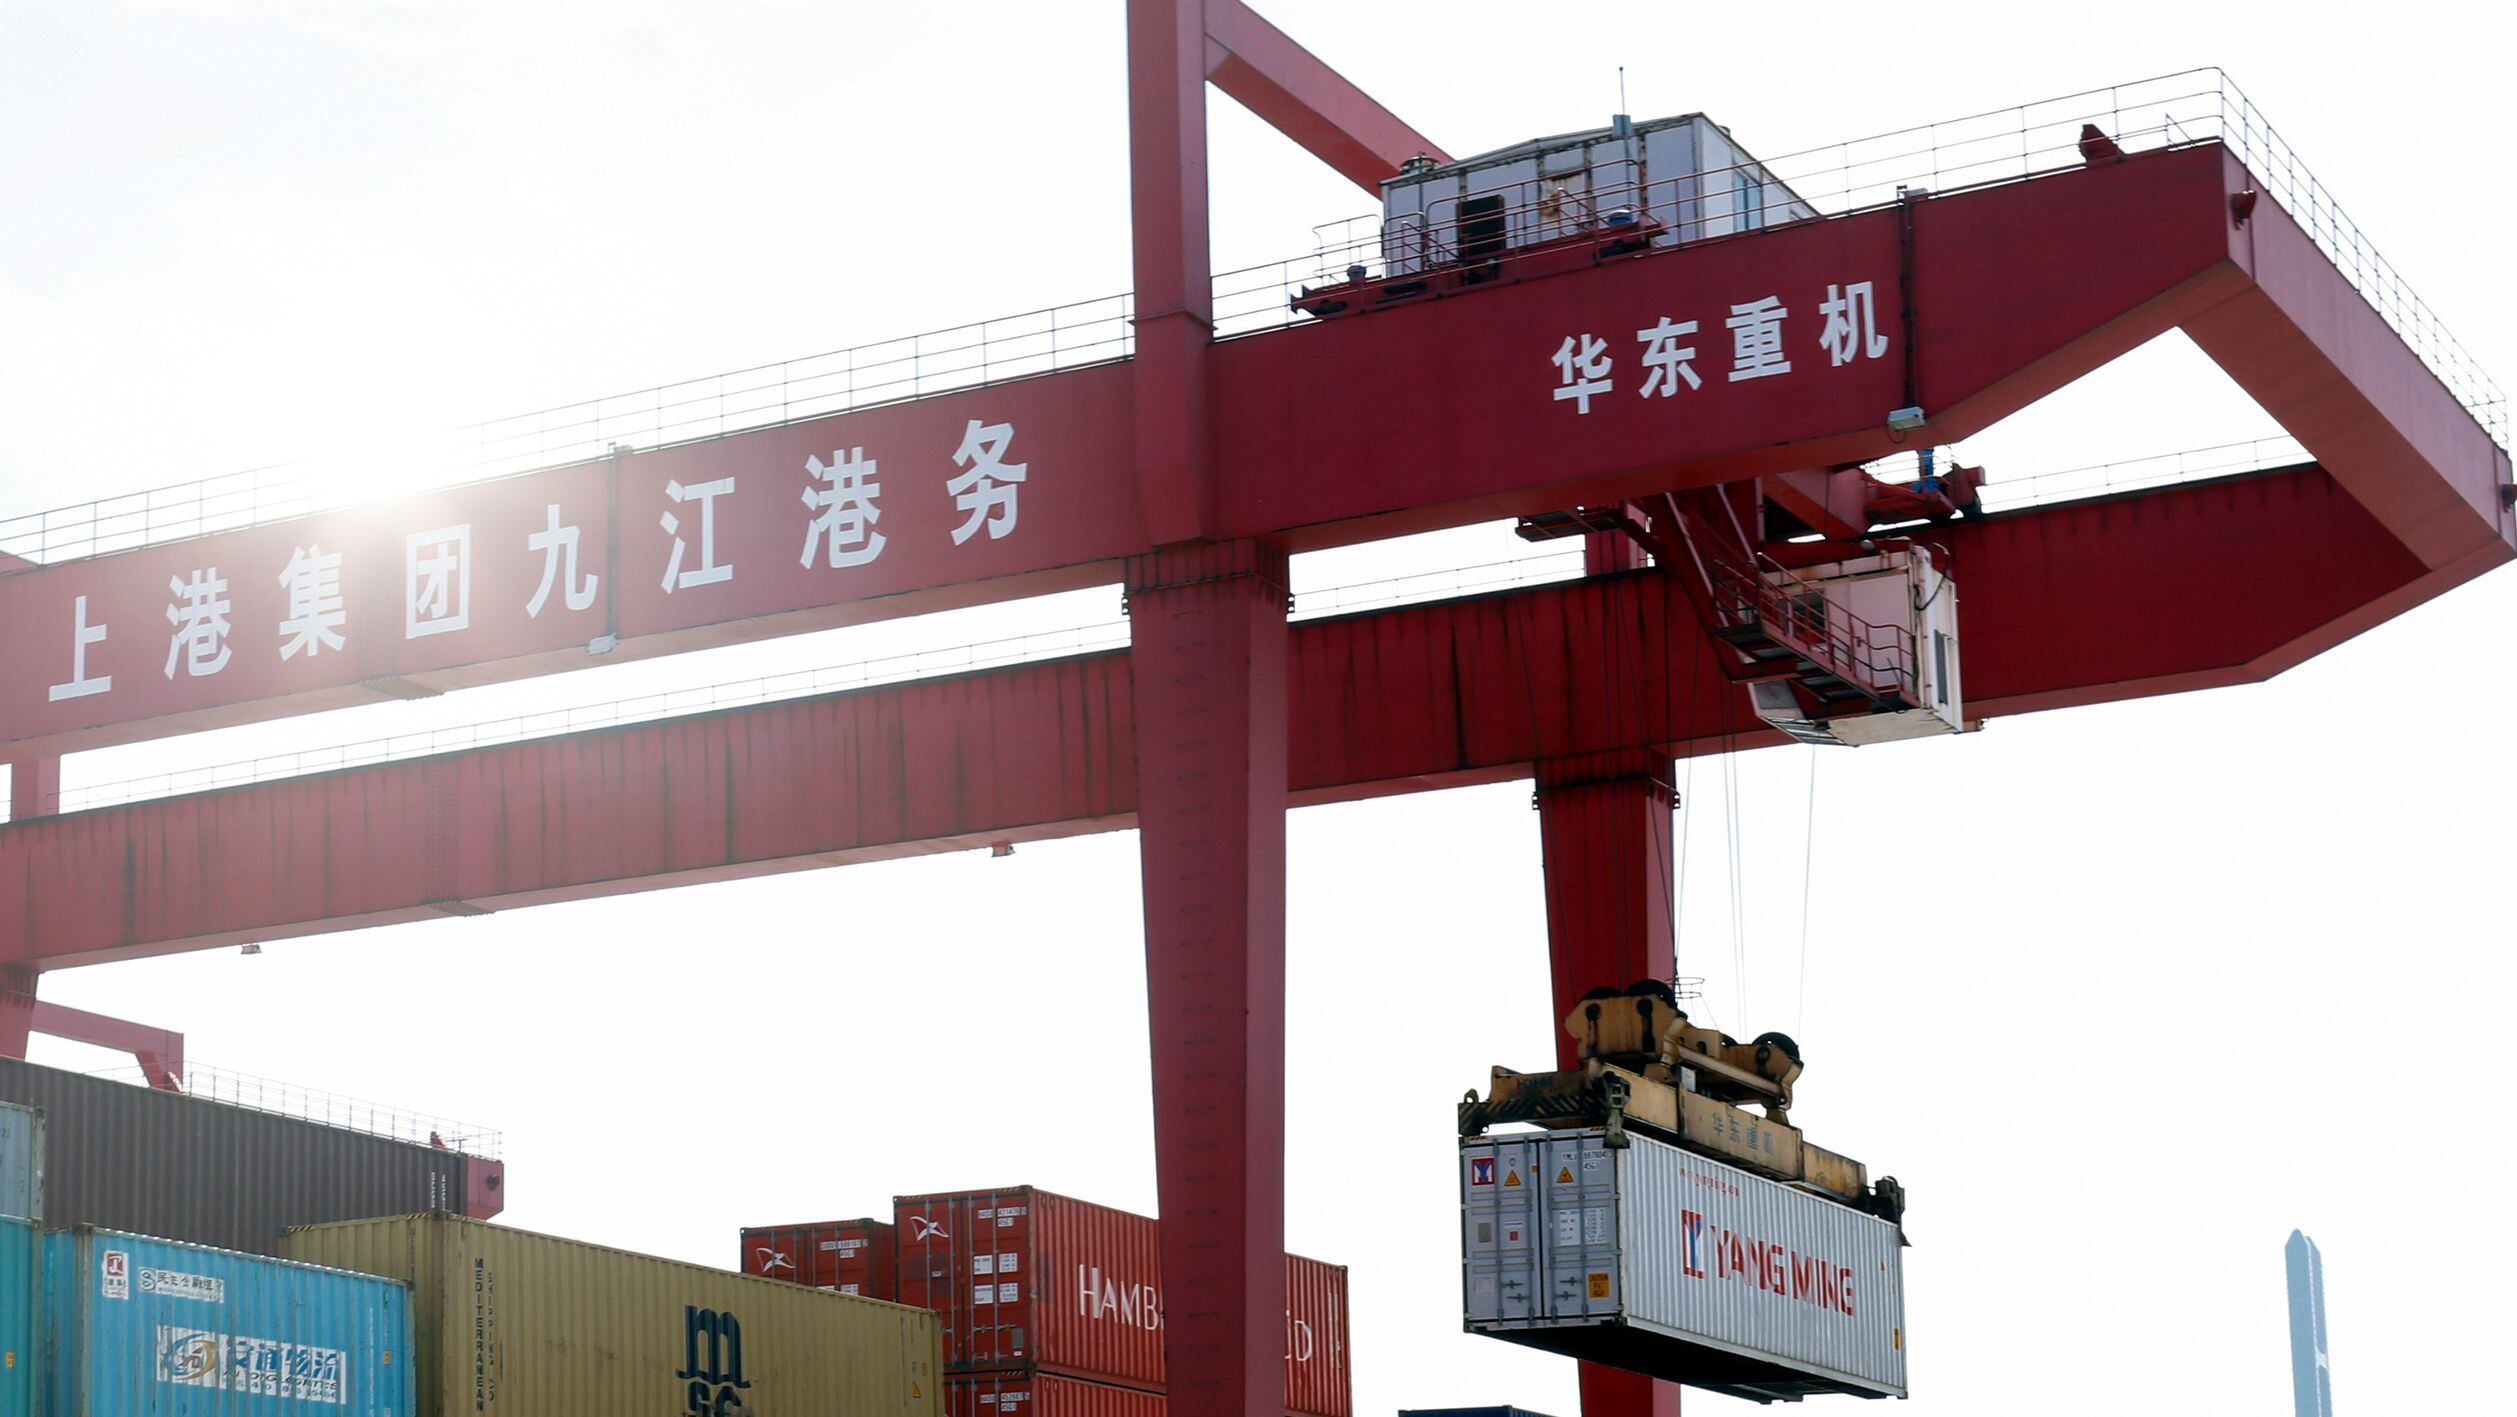 21-04-2020 Imagen de una grupo portando un contenedor en un puerto en China.POLITICA ESPAÑA EUROPA ANDALUCÍA ECONOMIA EMPRESASEXTENDA